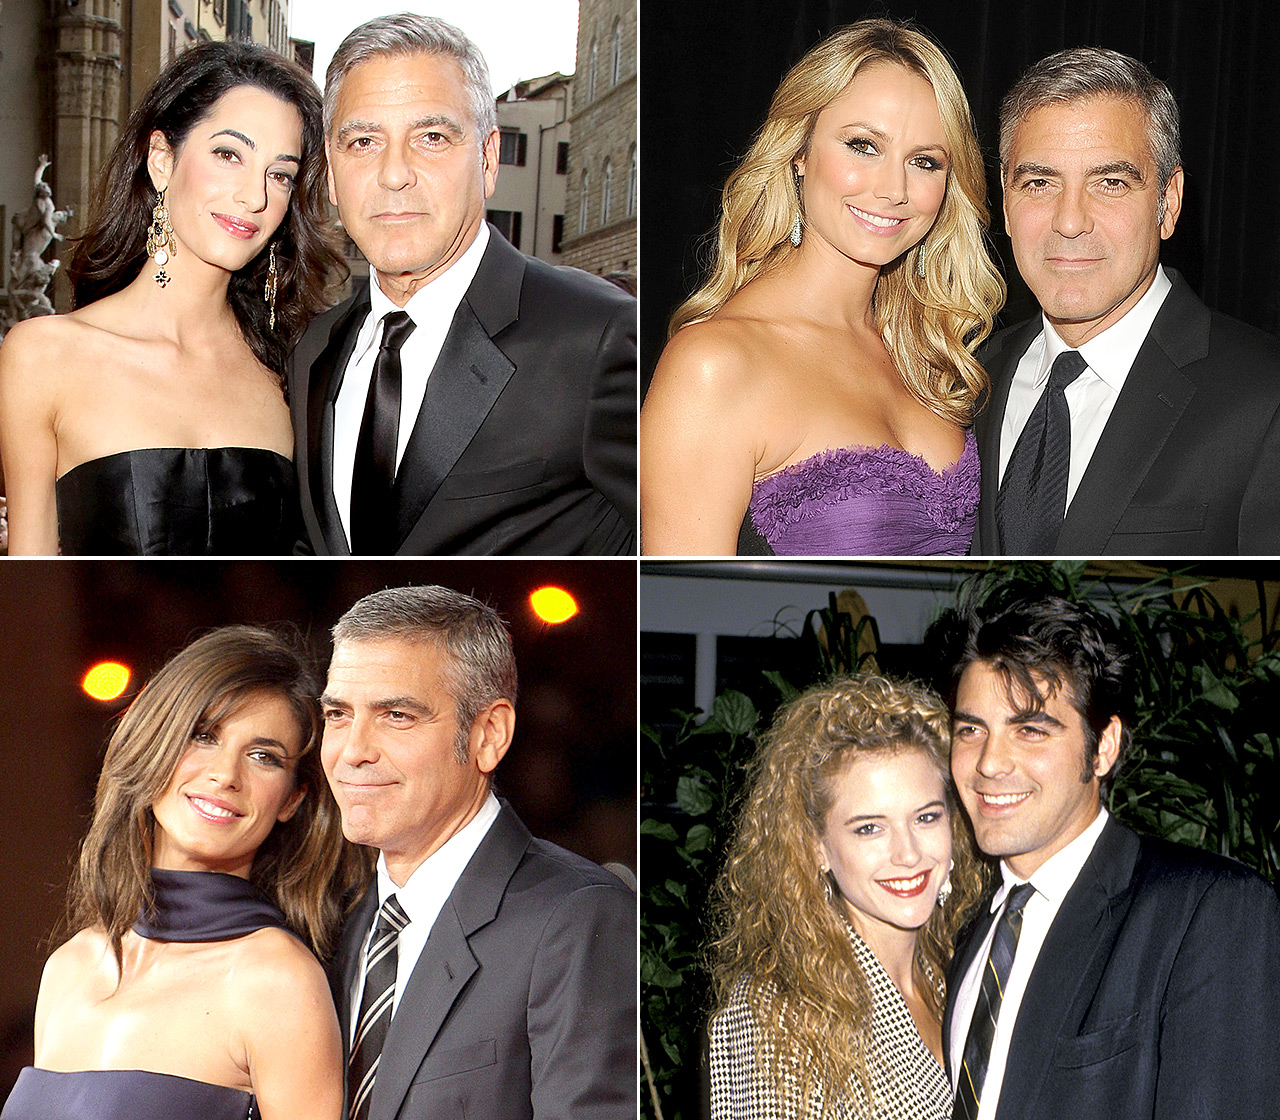 Date night! Amal şi George Clooney, drăgăstoşi în public